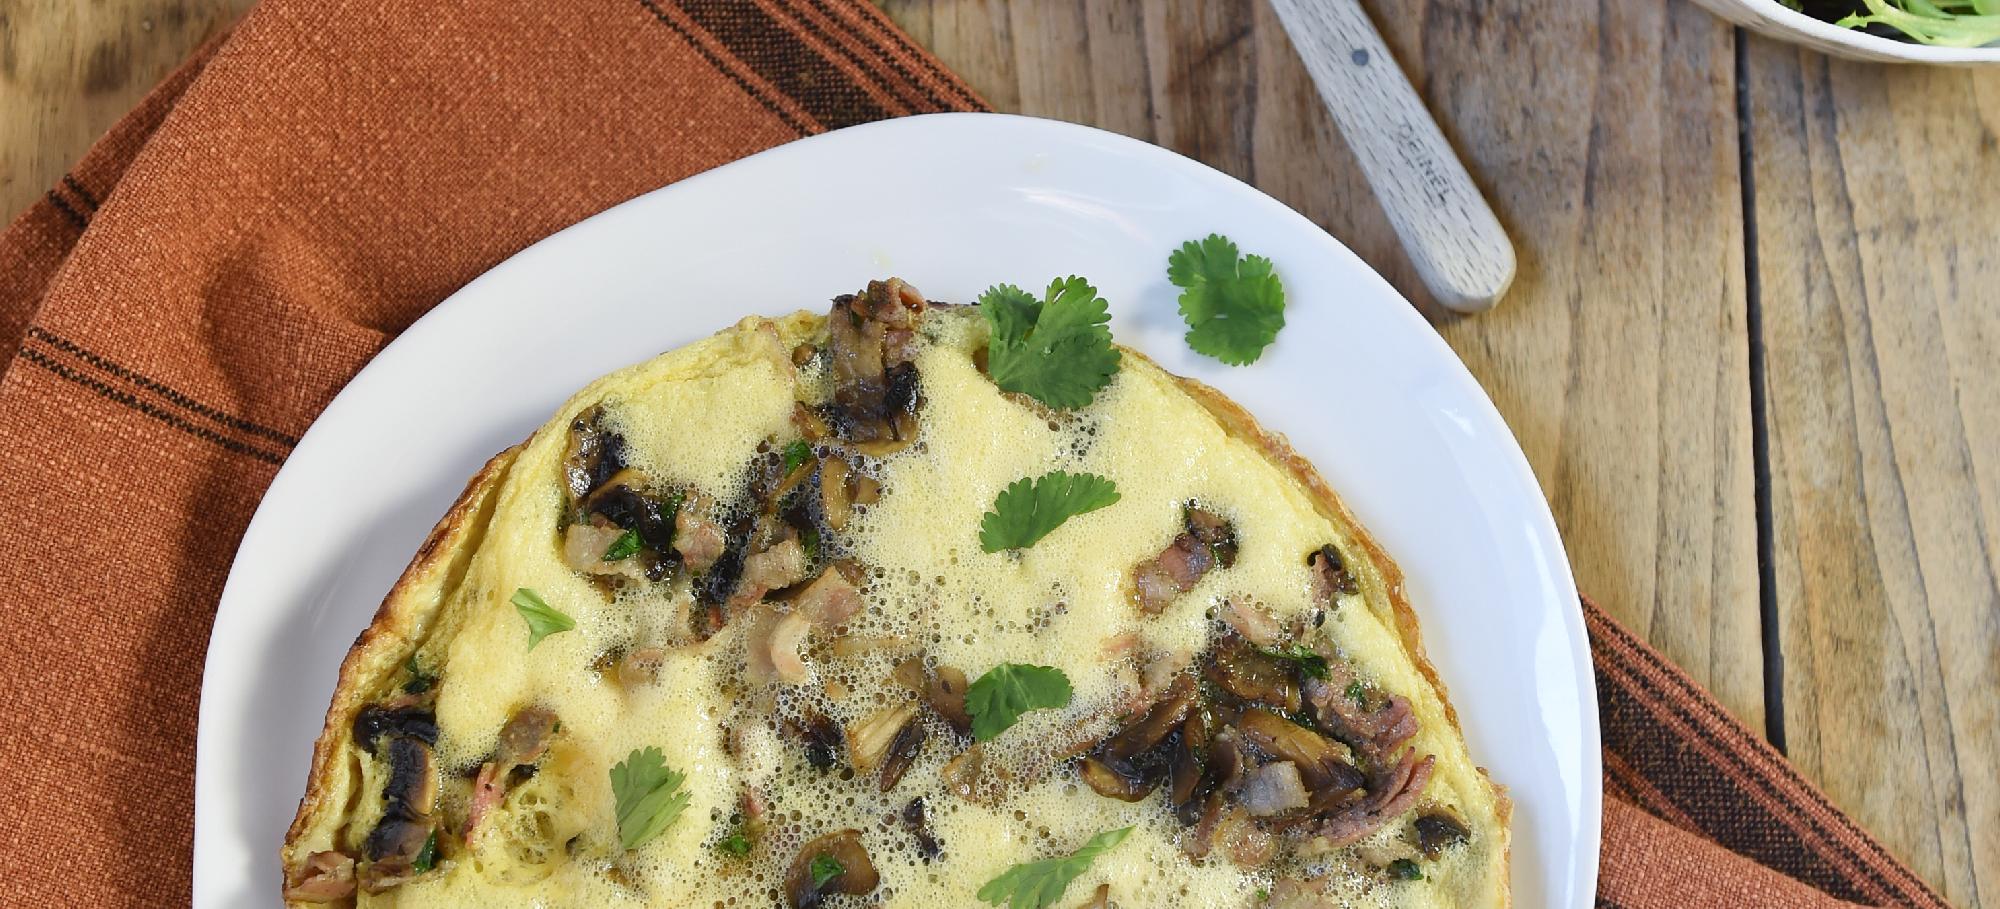 Omelette aux champignons et lardons | Mes Recettes